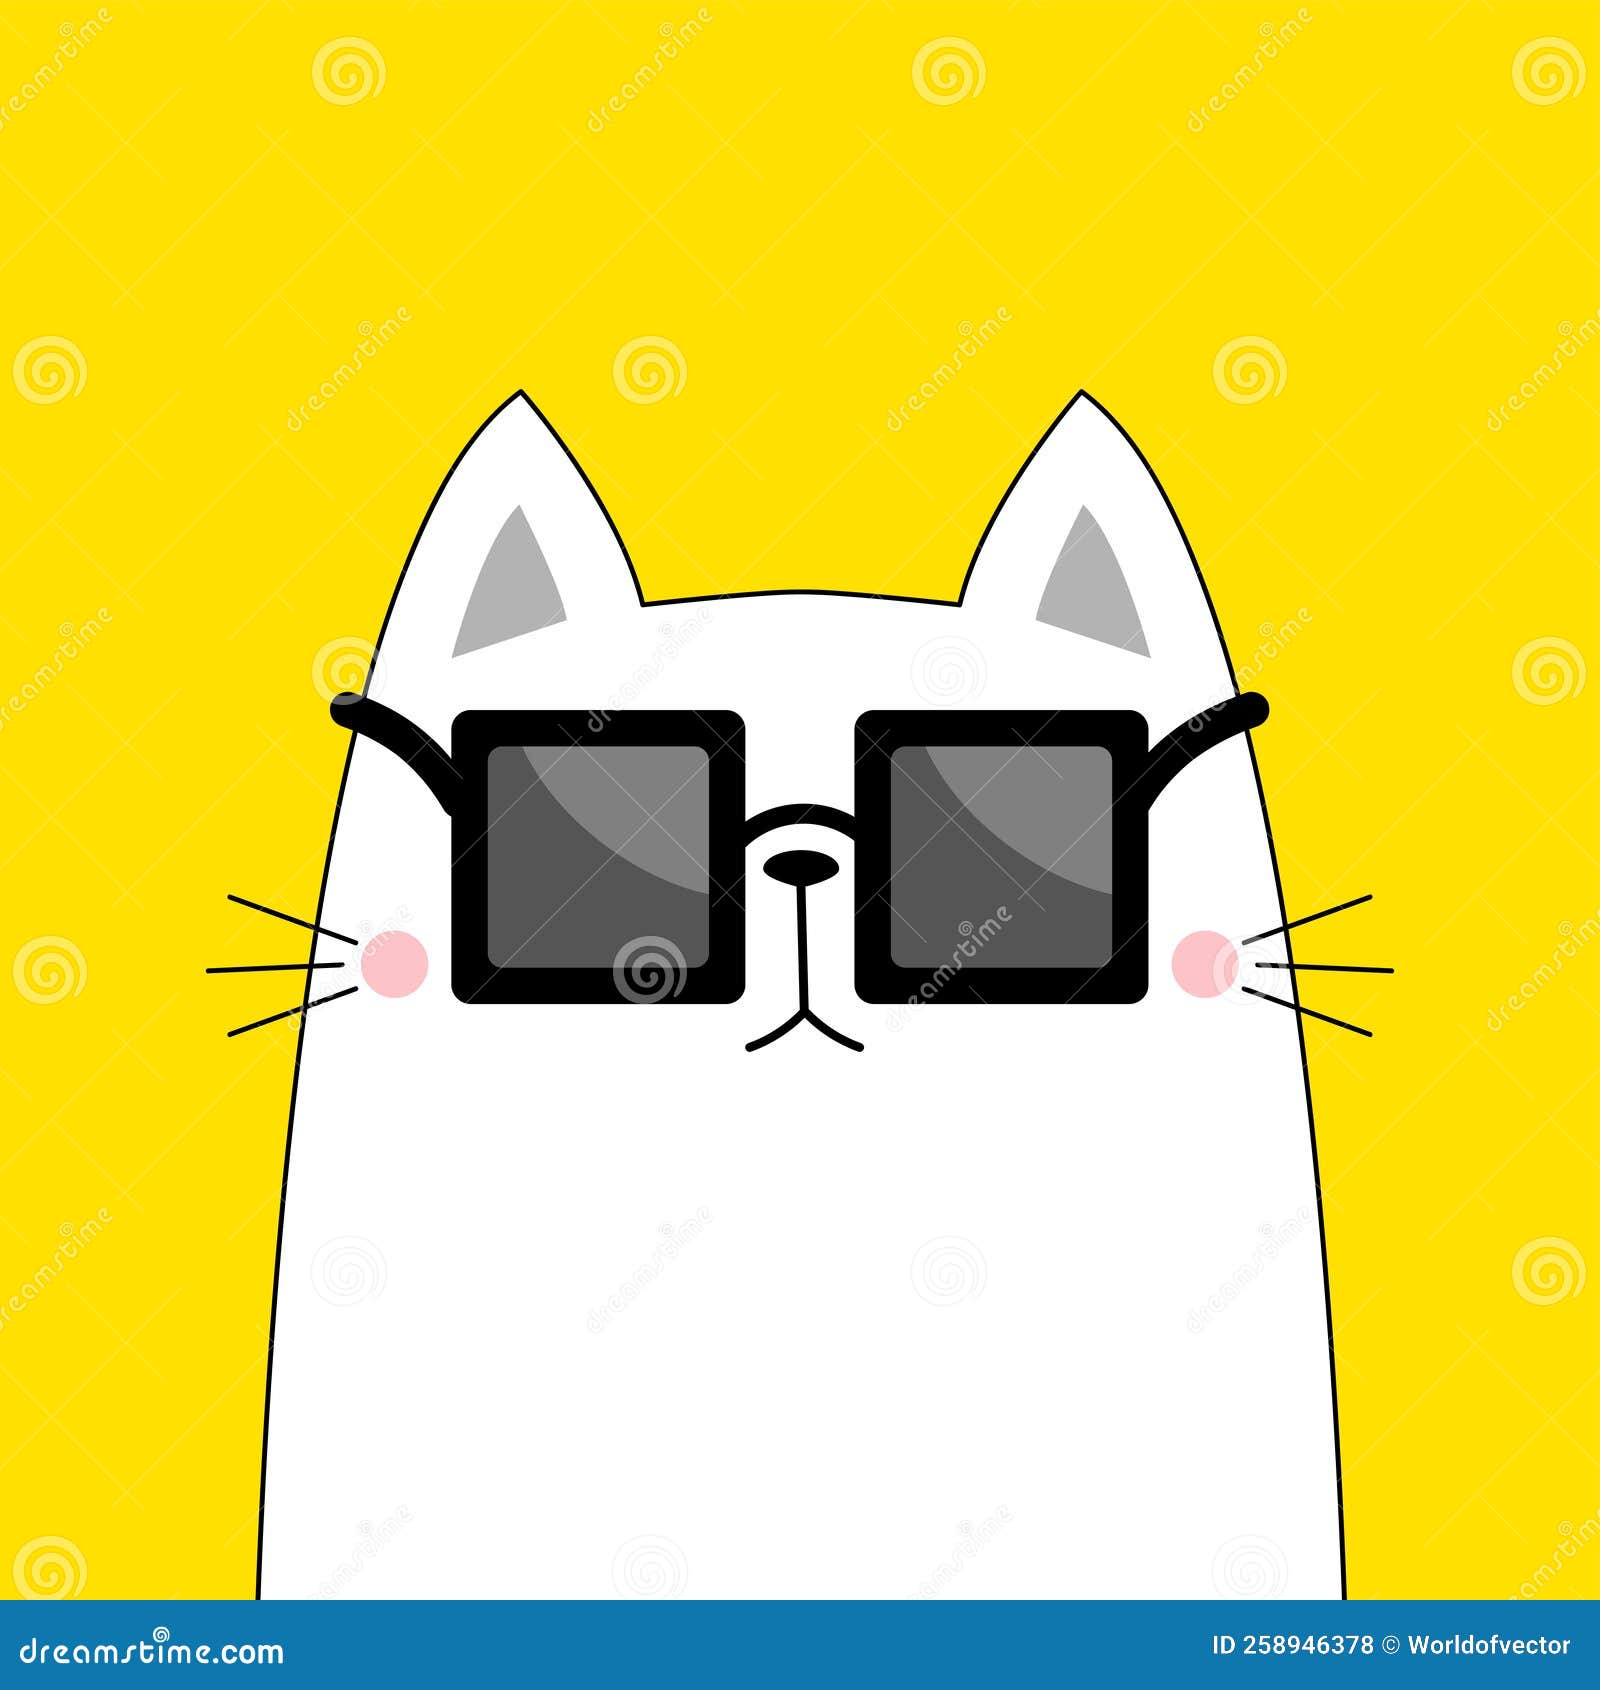 Gato bonito dos desenhos animados com um ícone quadrado de forma quadrada  para aplicativos ou jogos ilustração vetorial isolada